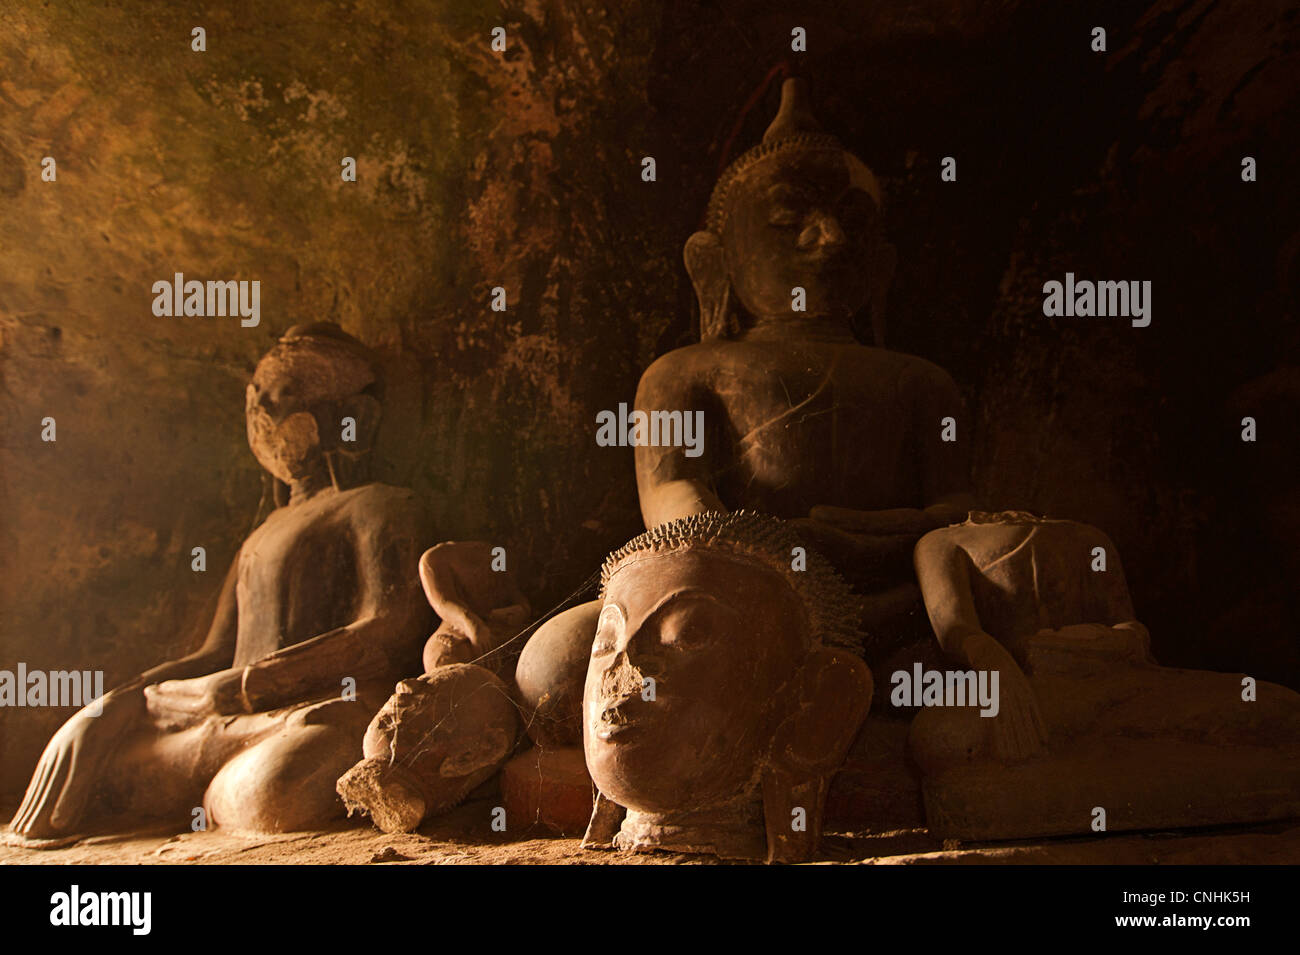 Les statues de Bouddha, Hpo Win Daung grottes, près de Monywa, région Rhône-Alpes, France Banque D'Images